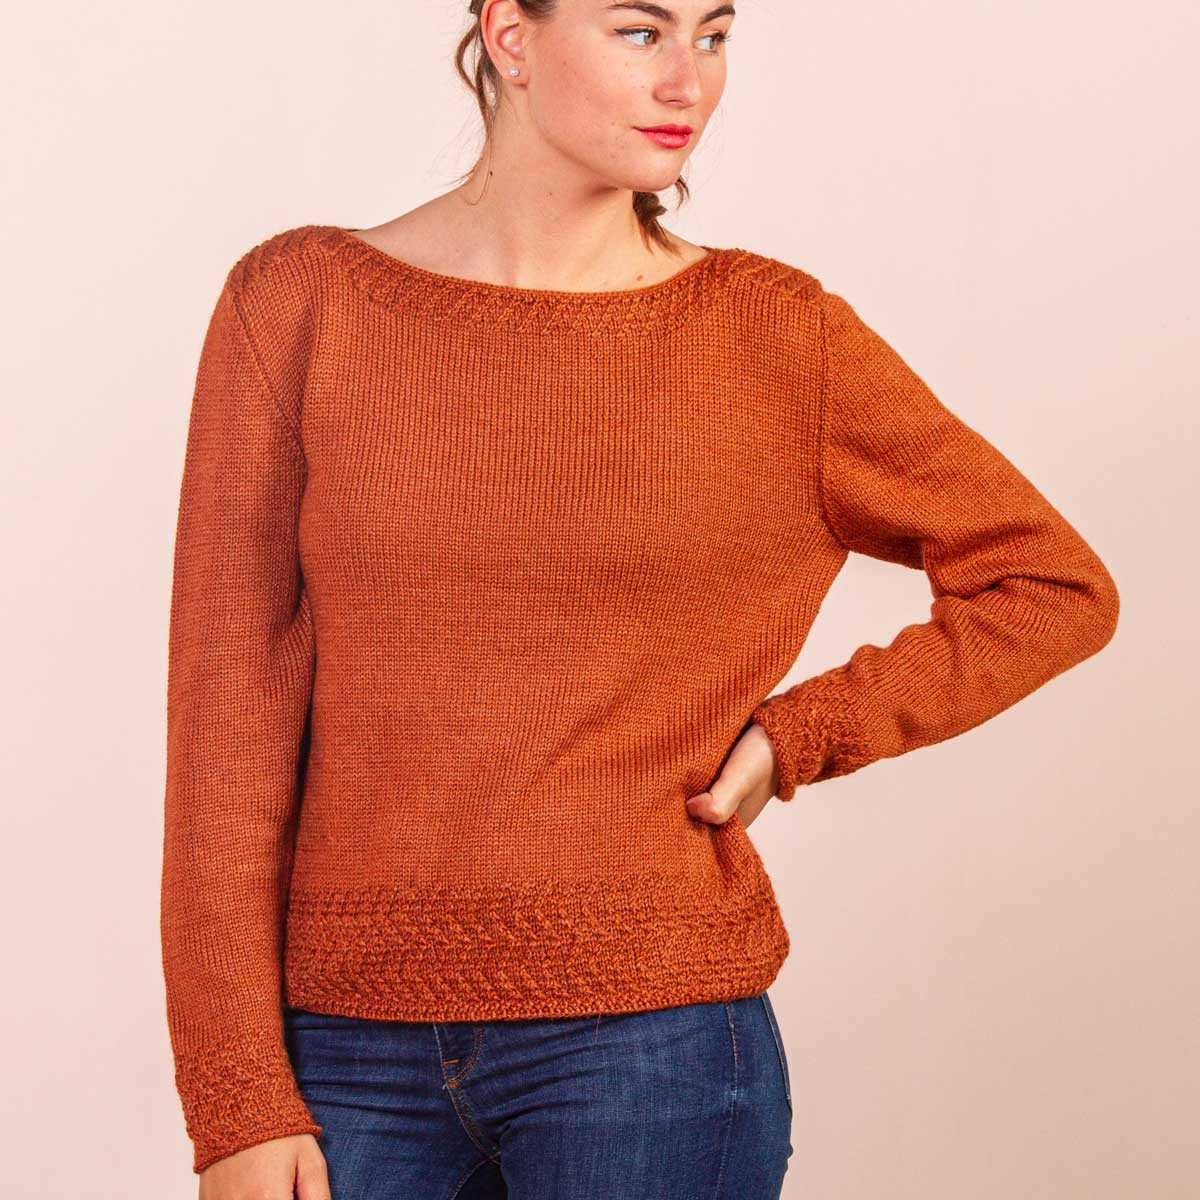 Modèle pull femme à tricoter